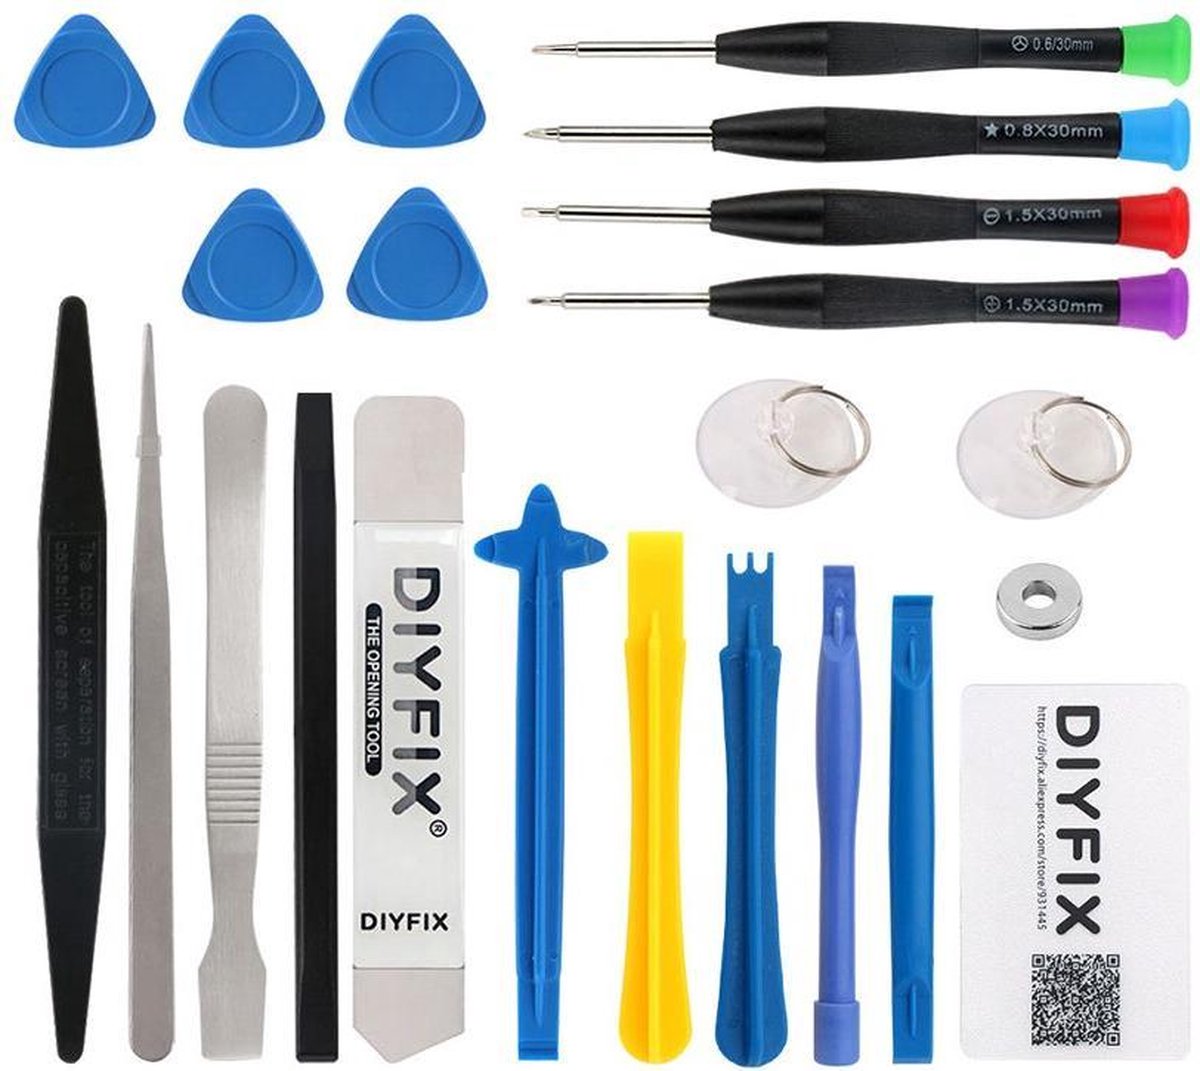 DIYFIX 23 in 1 Mobiele Telefoon Reparatie Tools Set voor iPhone X 8 7 6 s 6 Plus Demontage Handgereedschap kit Schroevendraaier Picks Set Spudger - 